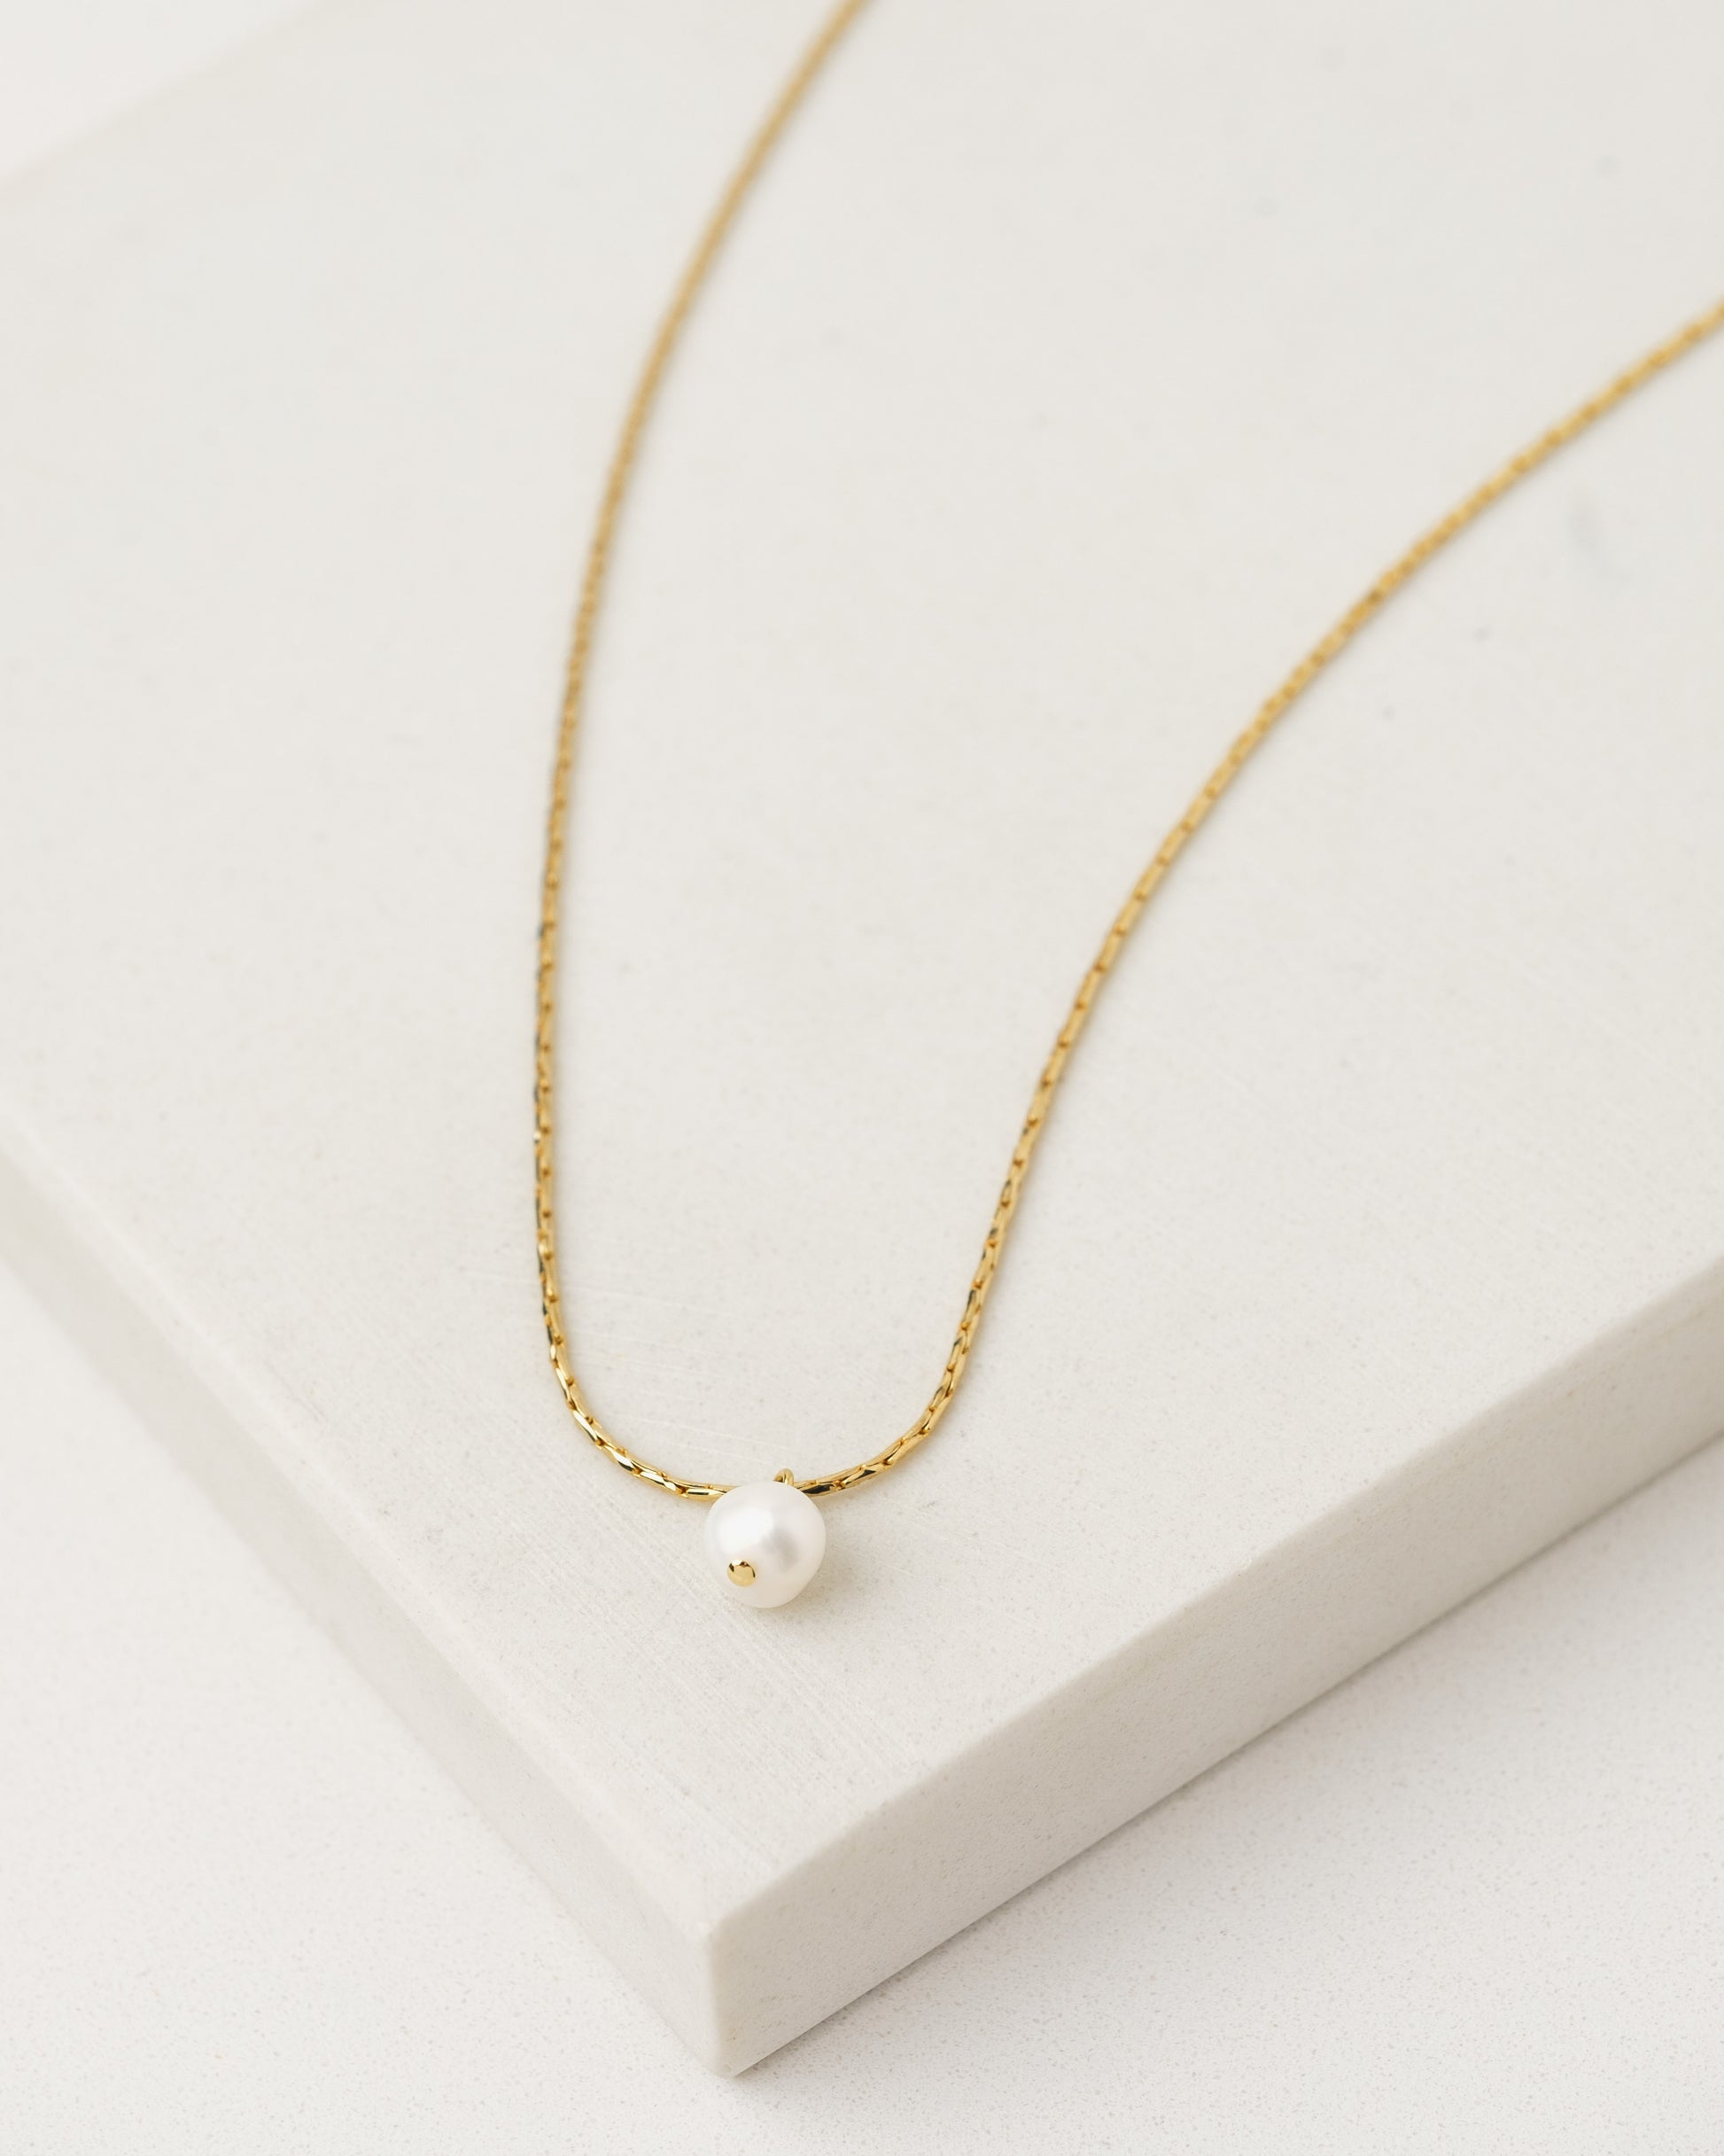 Accessories - Lover's Tempo - Amari Pearl Necklace - PLENTY